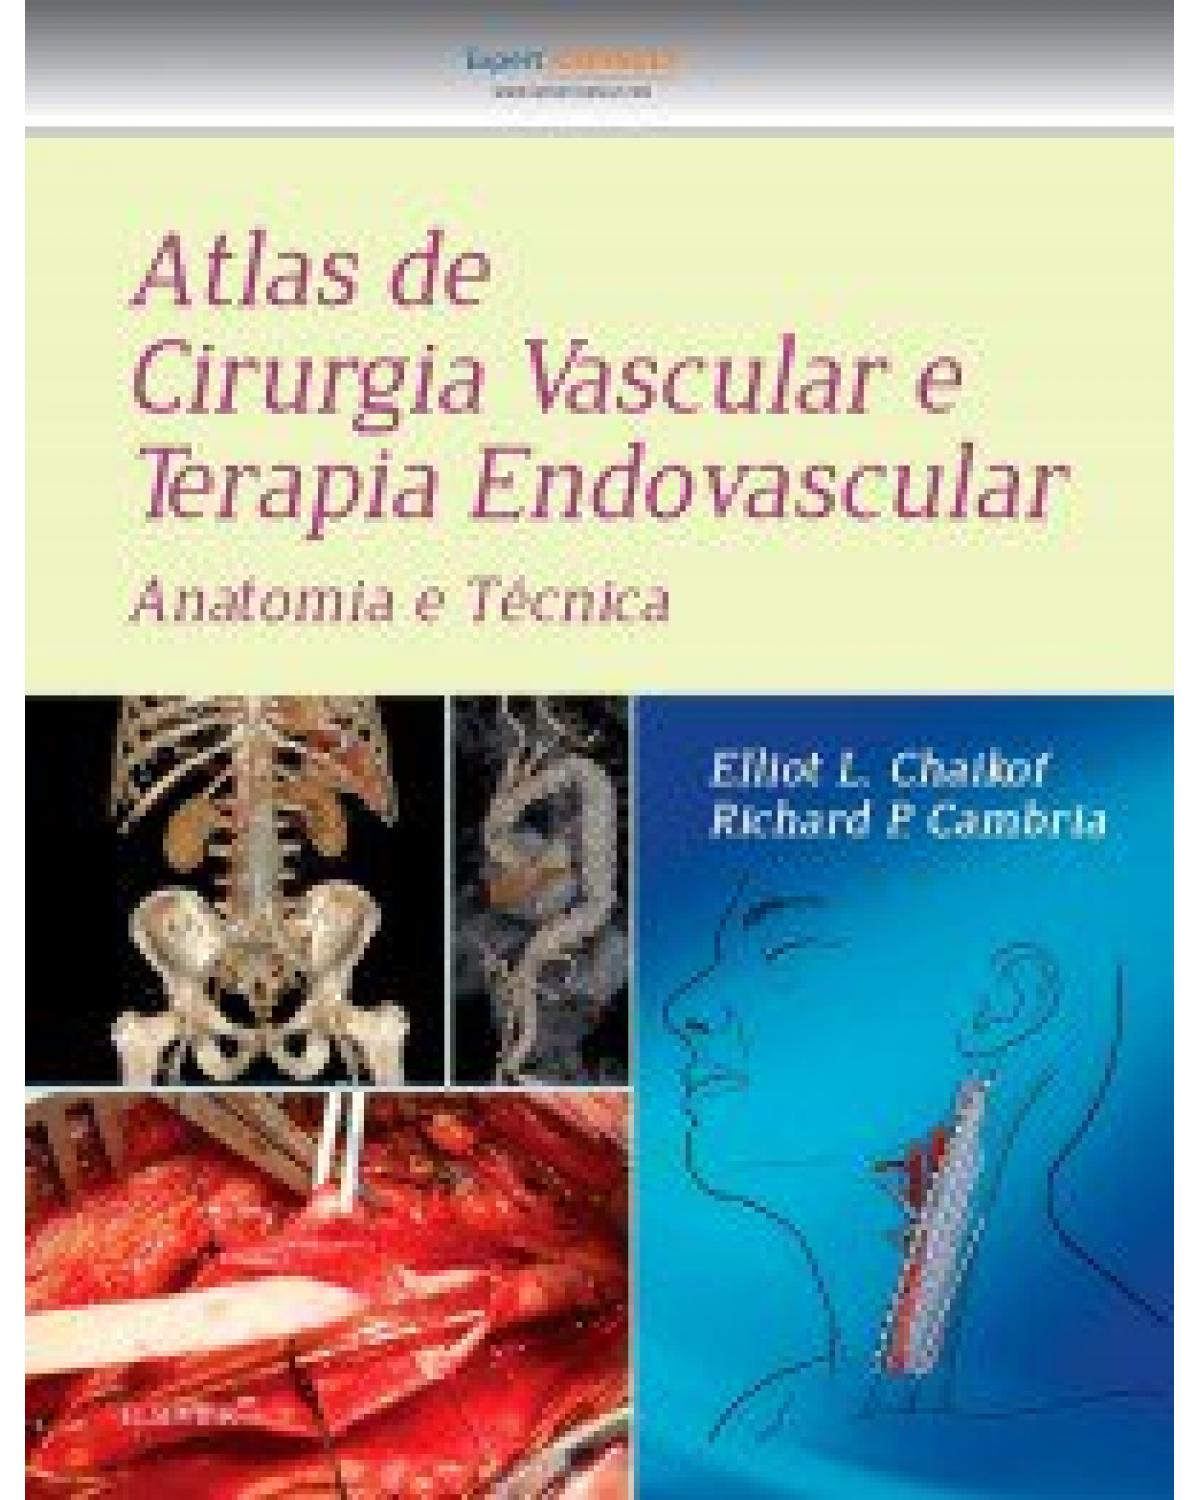 Atlas de cirurgia vascular e terapia endovascular - anatomia e técnica - 1ª Edição | 2016